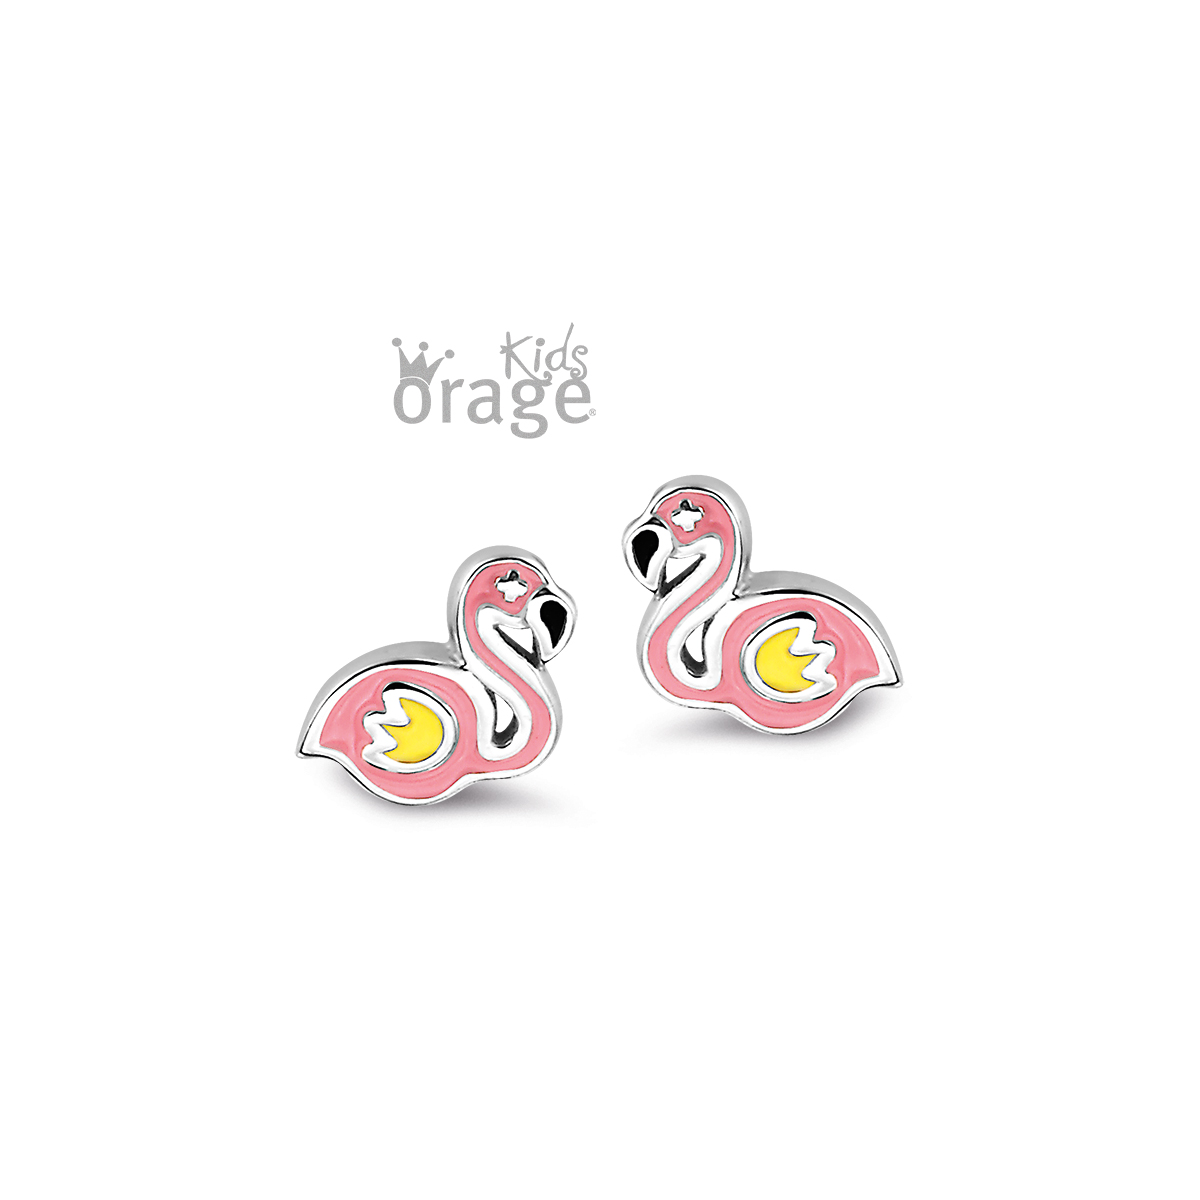 Orage Kids - k2388